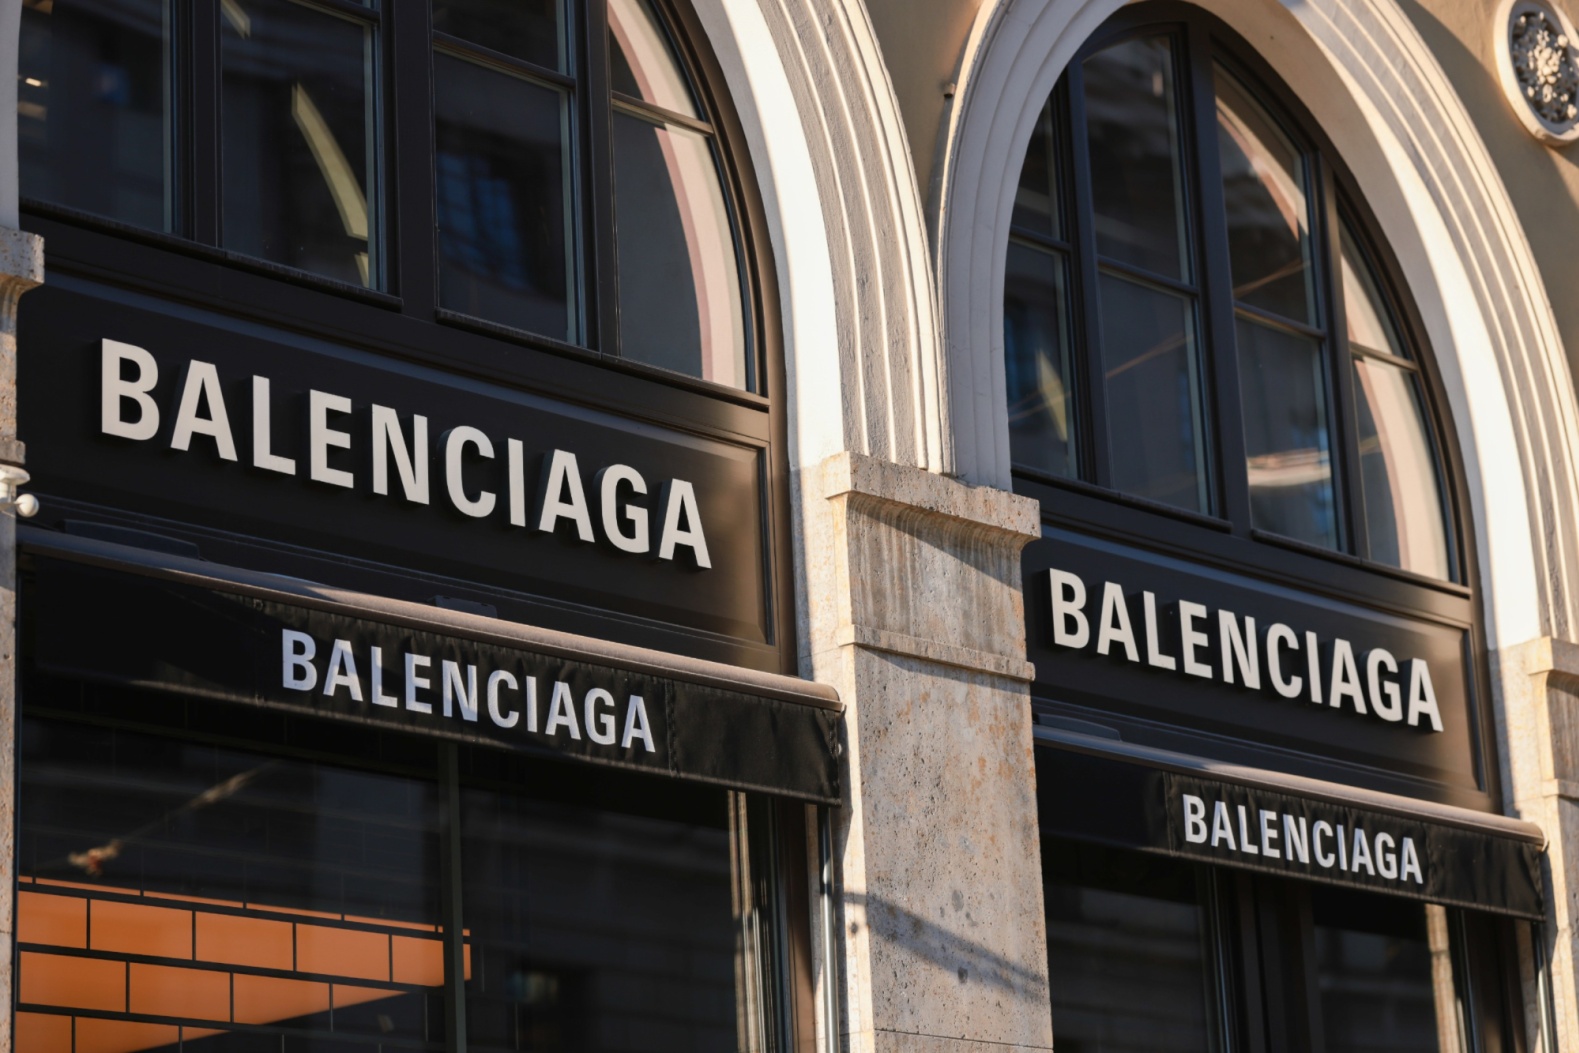 Balenciaga's Ad Controversy: A Study in Crisis Communication